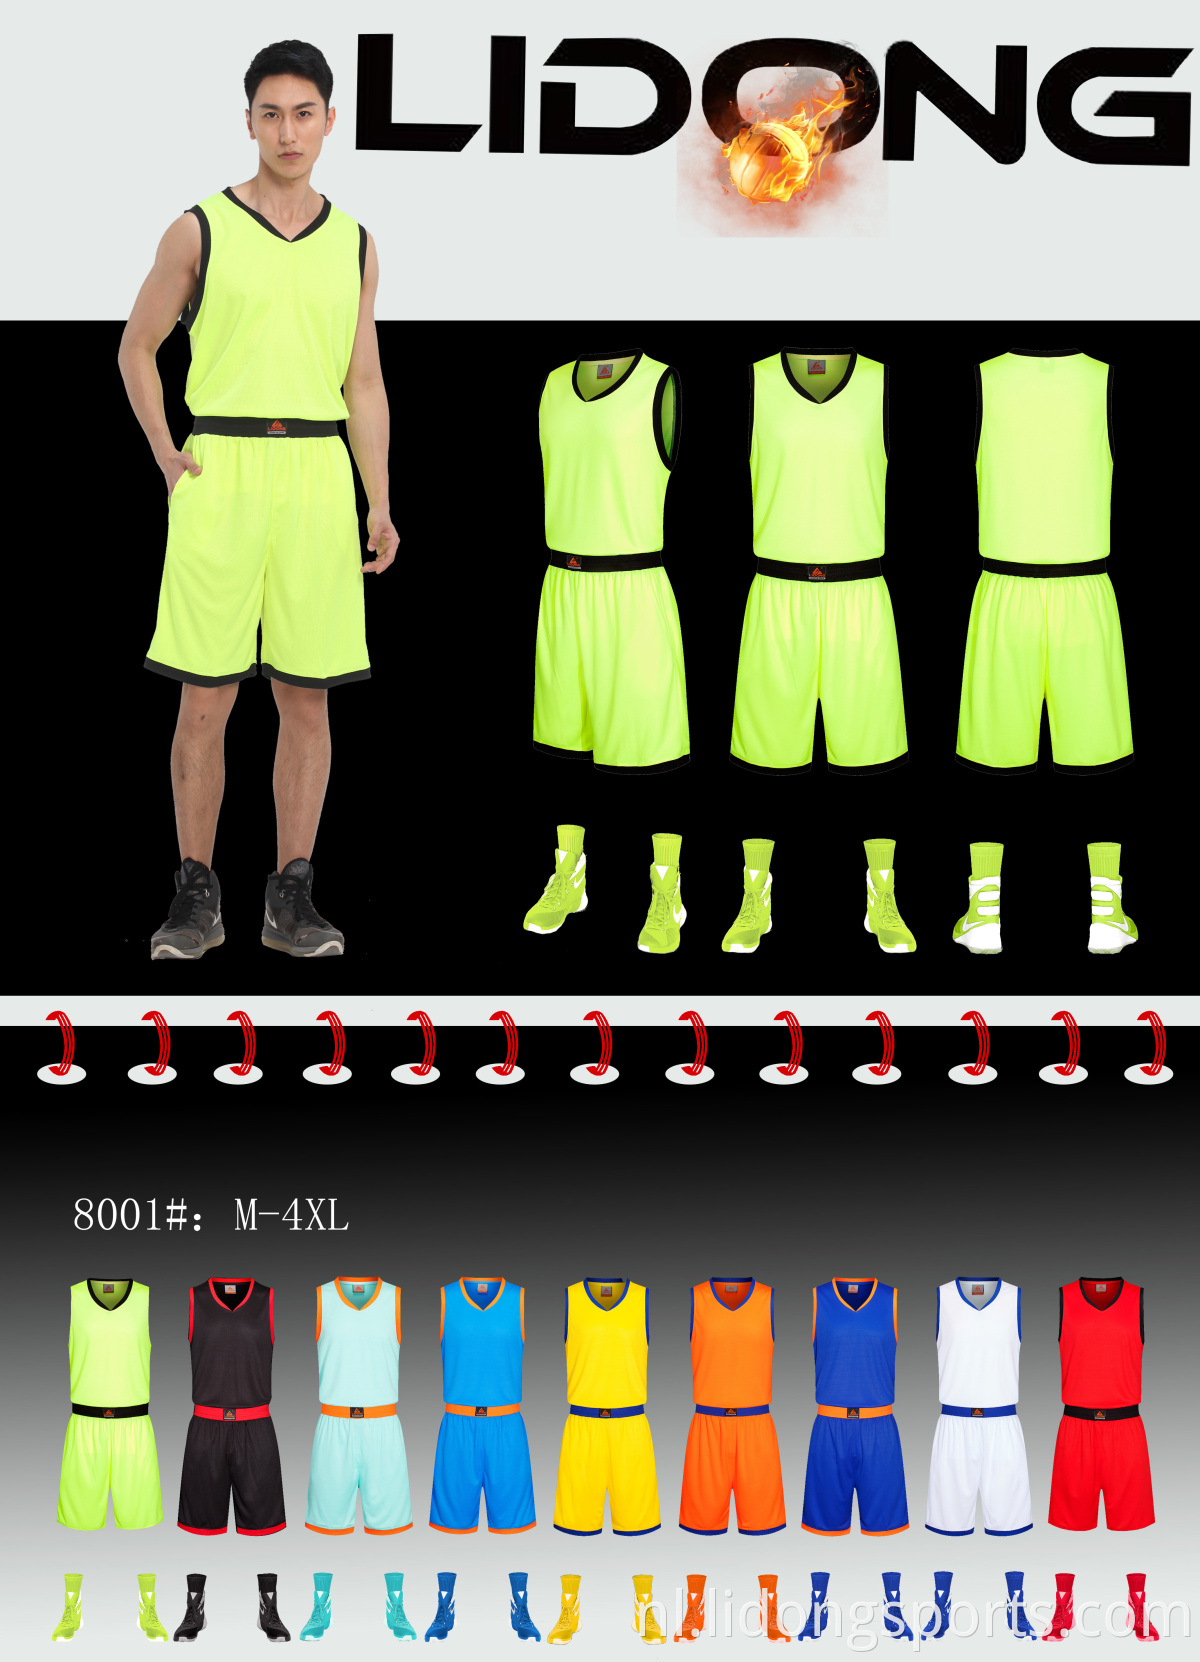 Groothandel gesublimeerd Custom Design Basketball Jersey Uniform voor kinderen/volwassenen